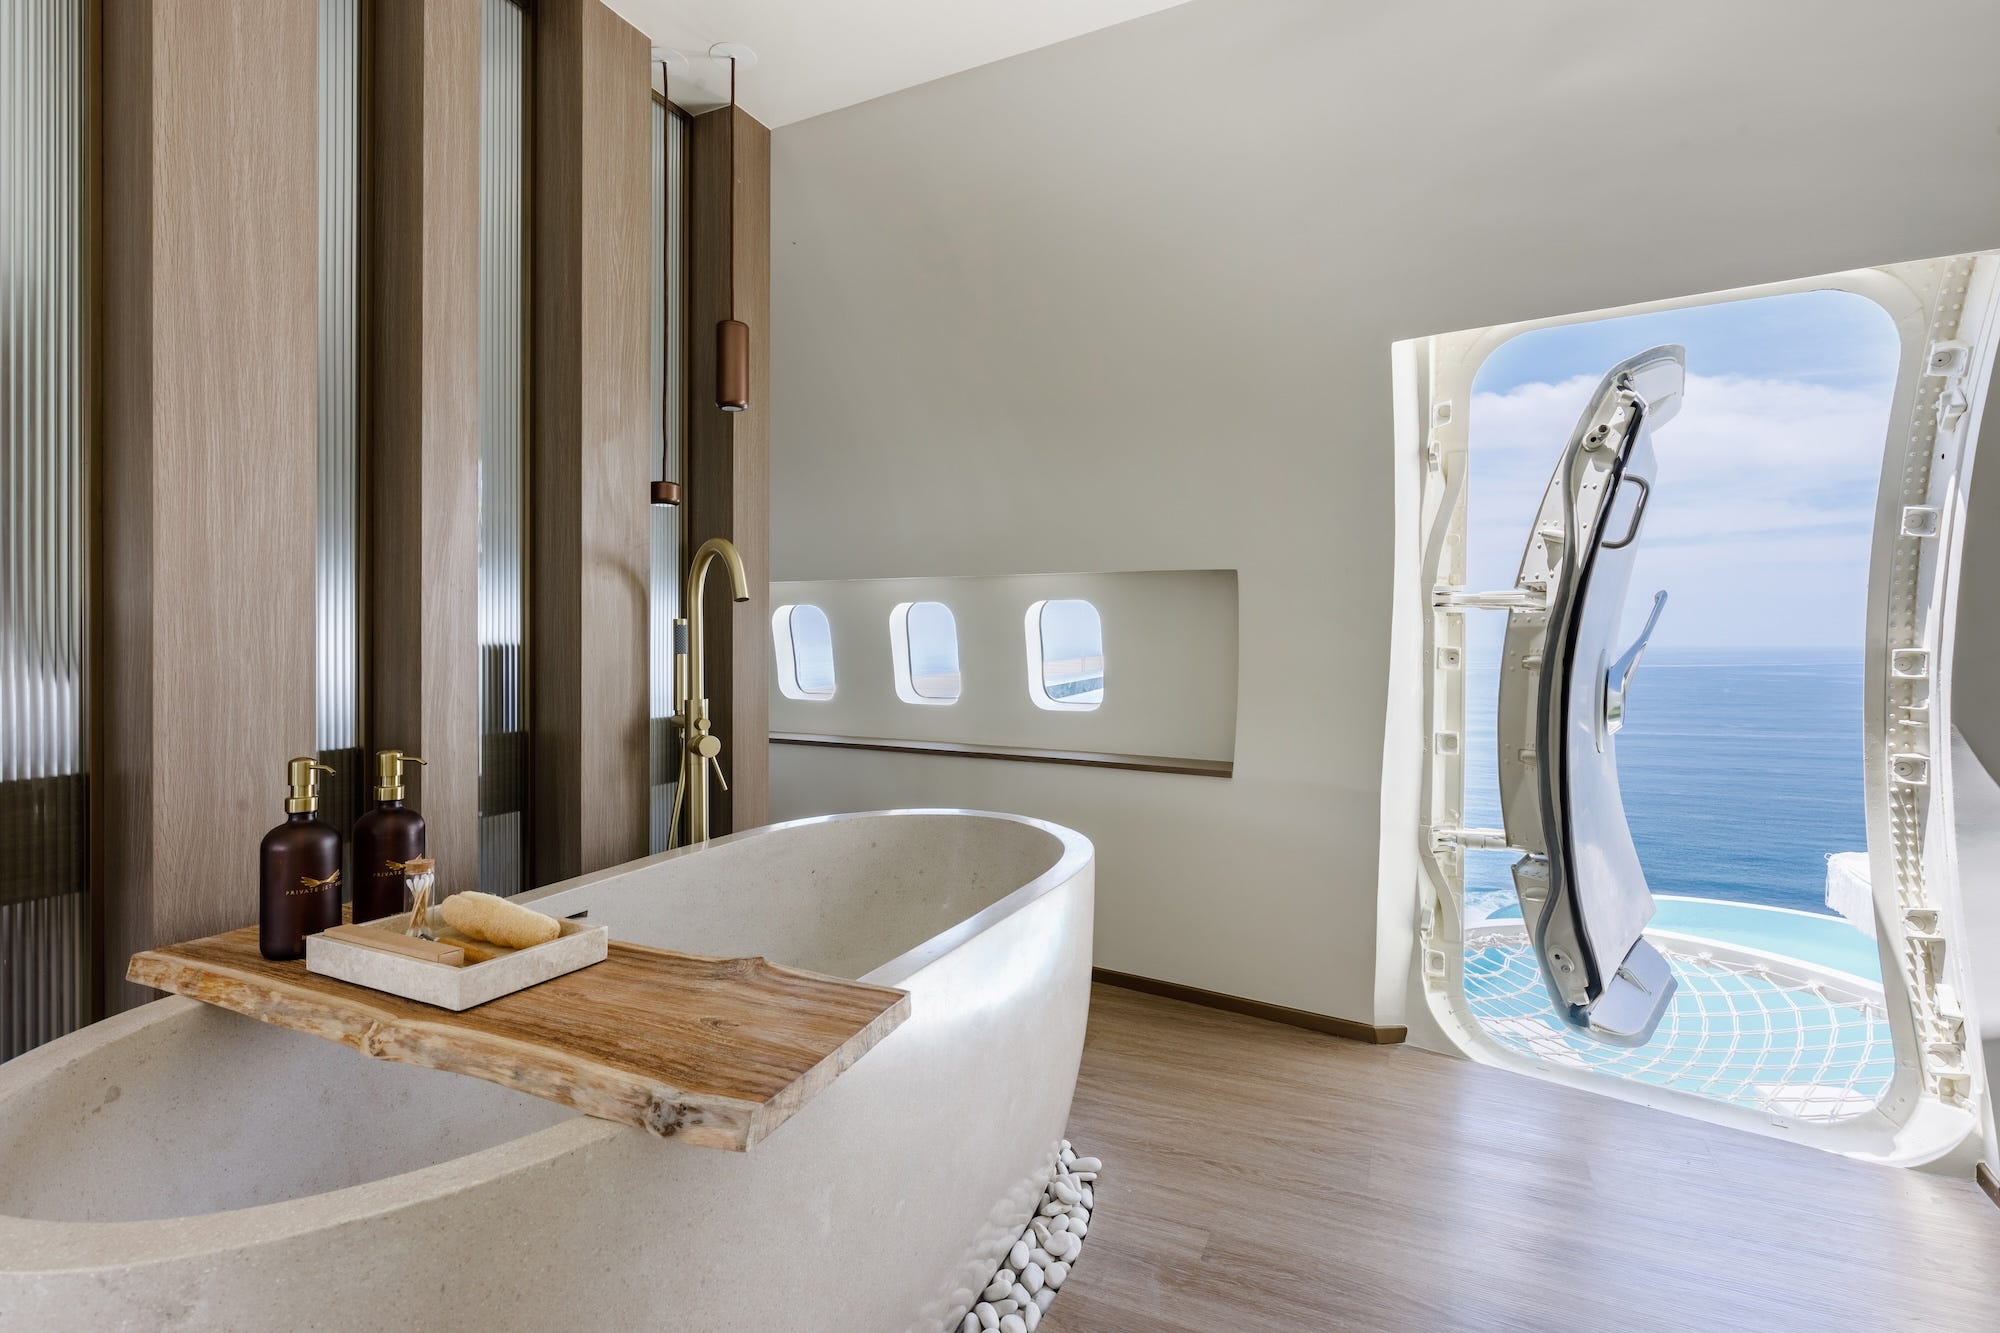 Een badkuip in het vliegtuig. De zijdeur van het vliegtuig staat open, met uitzicht op een zwembad.